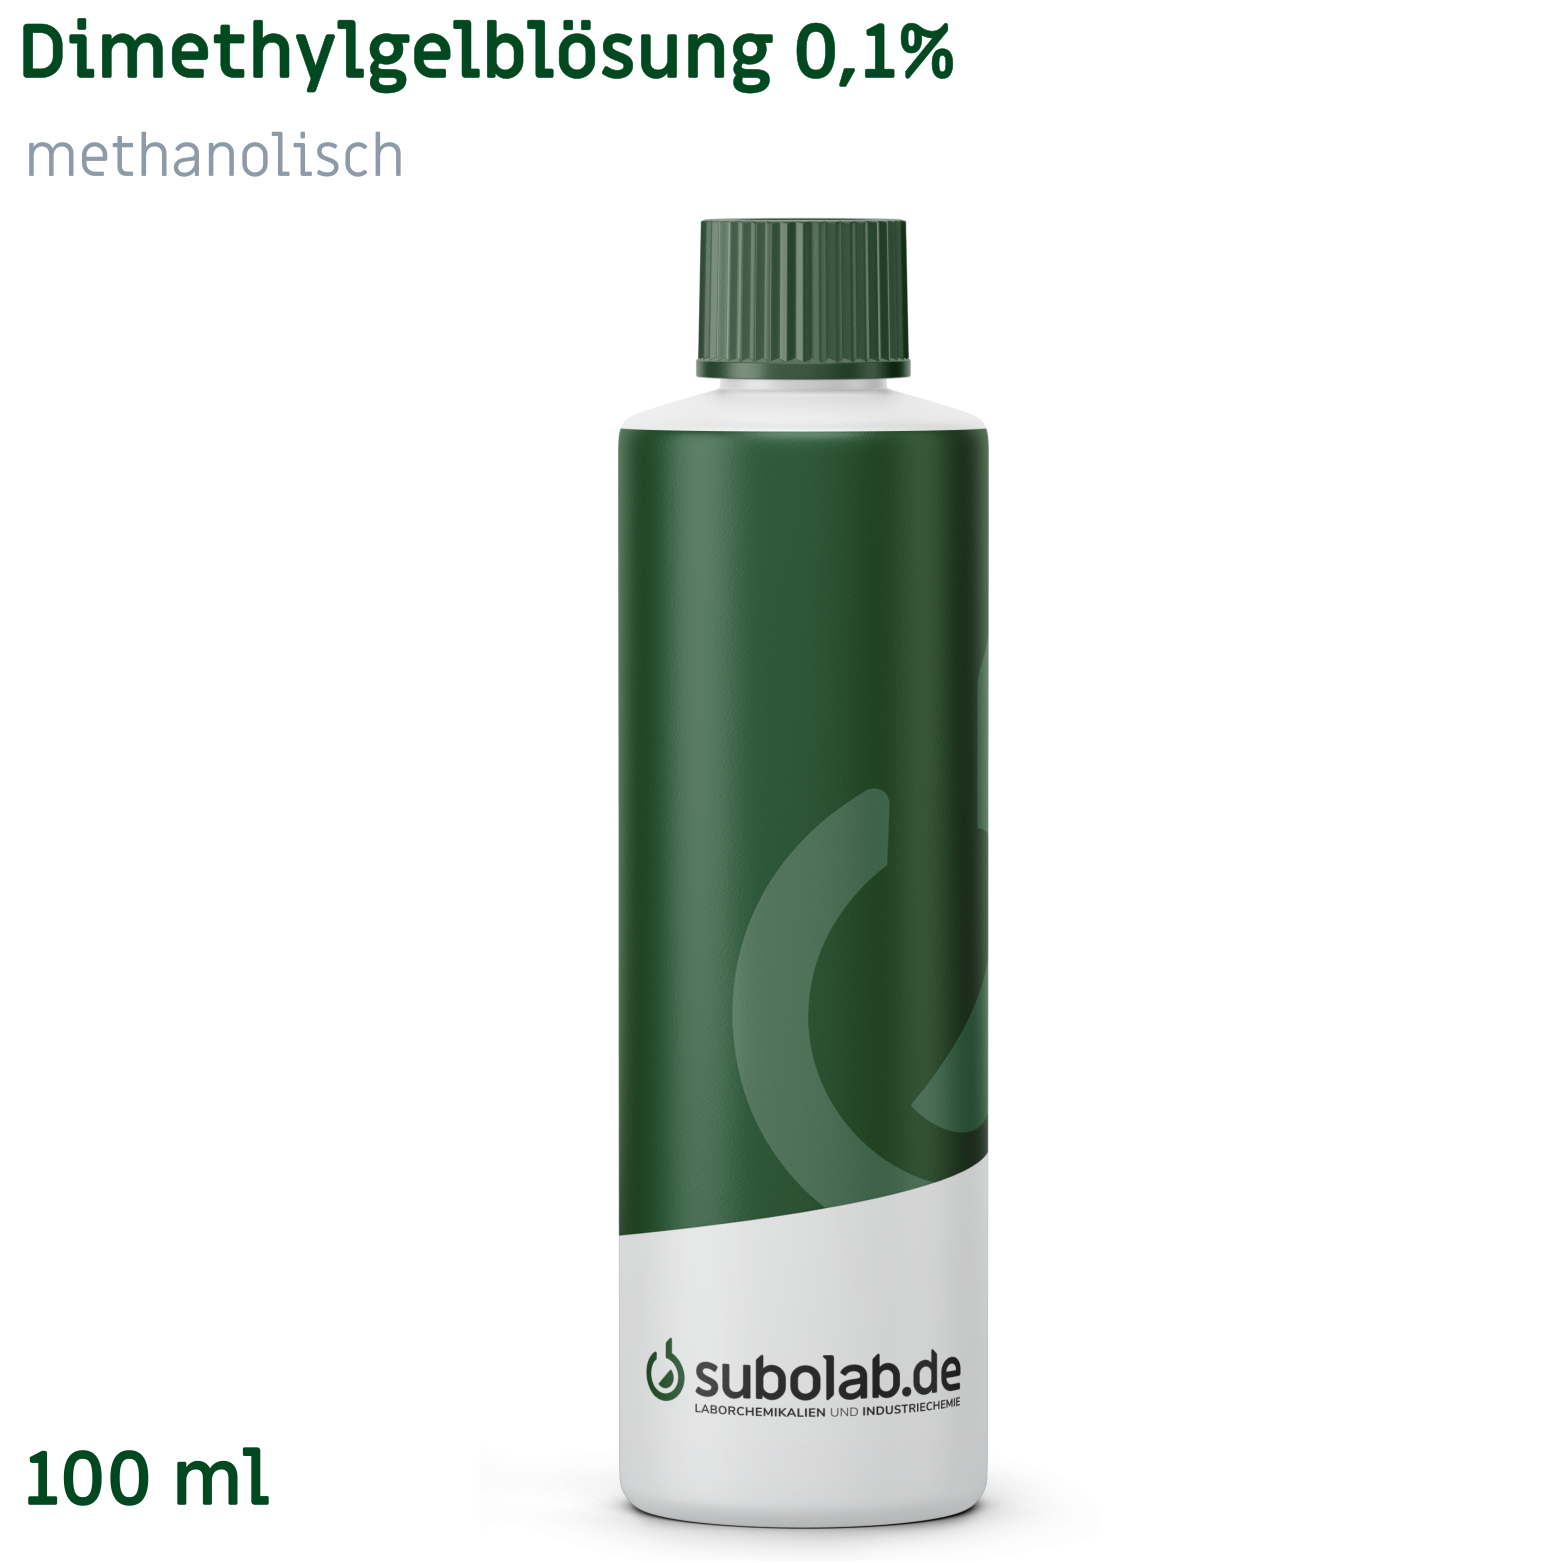 Bild von Dimethylgelblösung 0,1% methanolisch (100 ml)